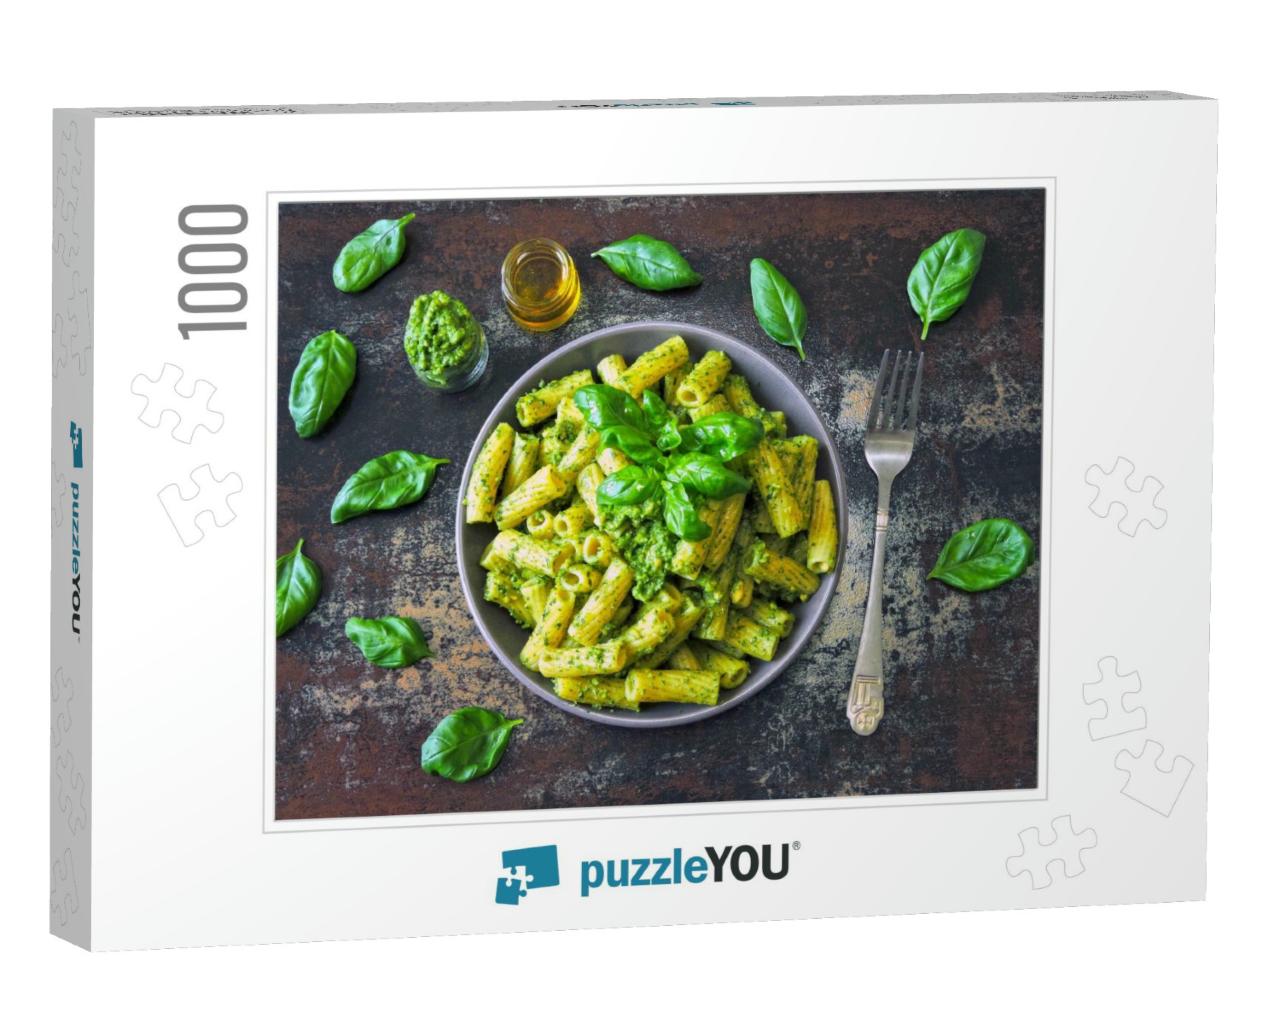 Pasta Pesto Vegan Bowl... Jigsaw Puzzle with 1000 pieces